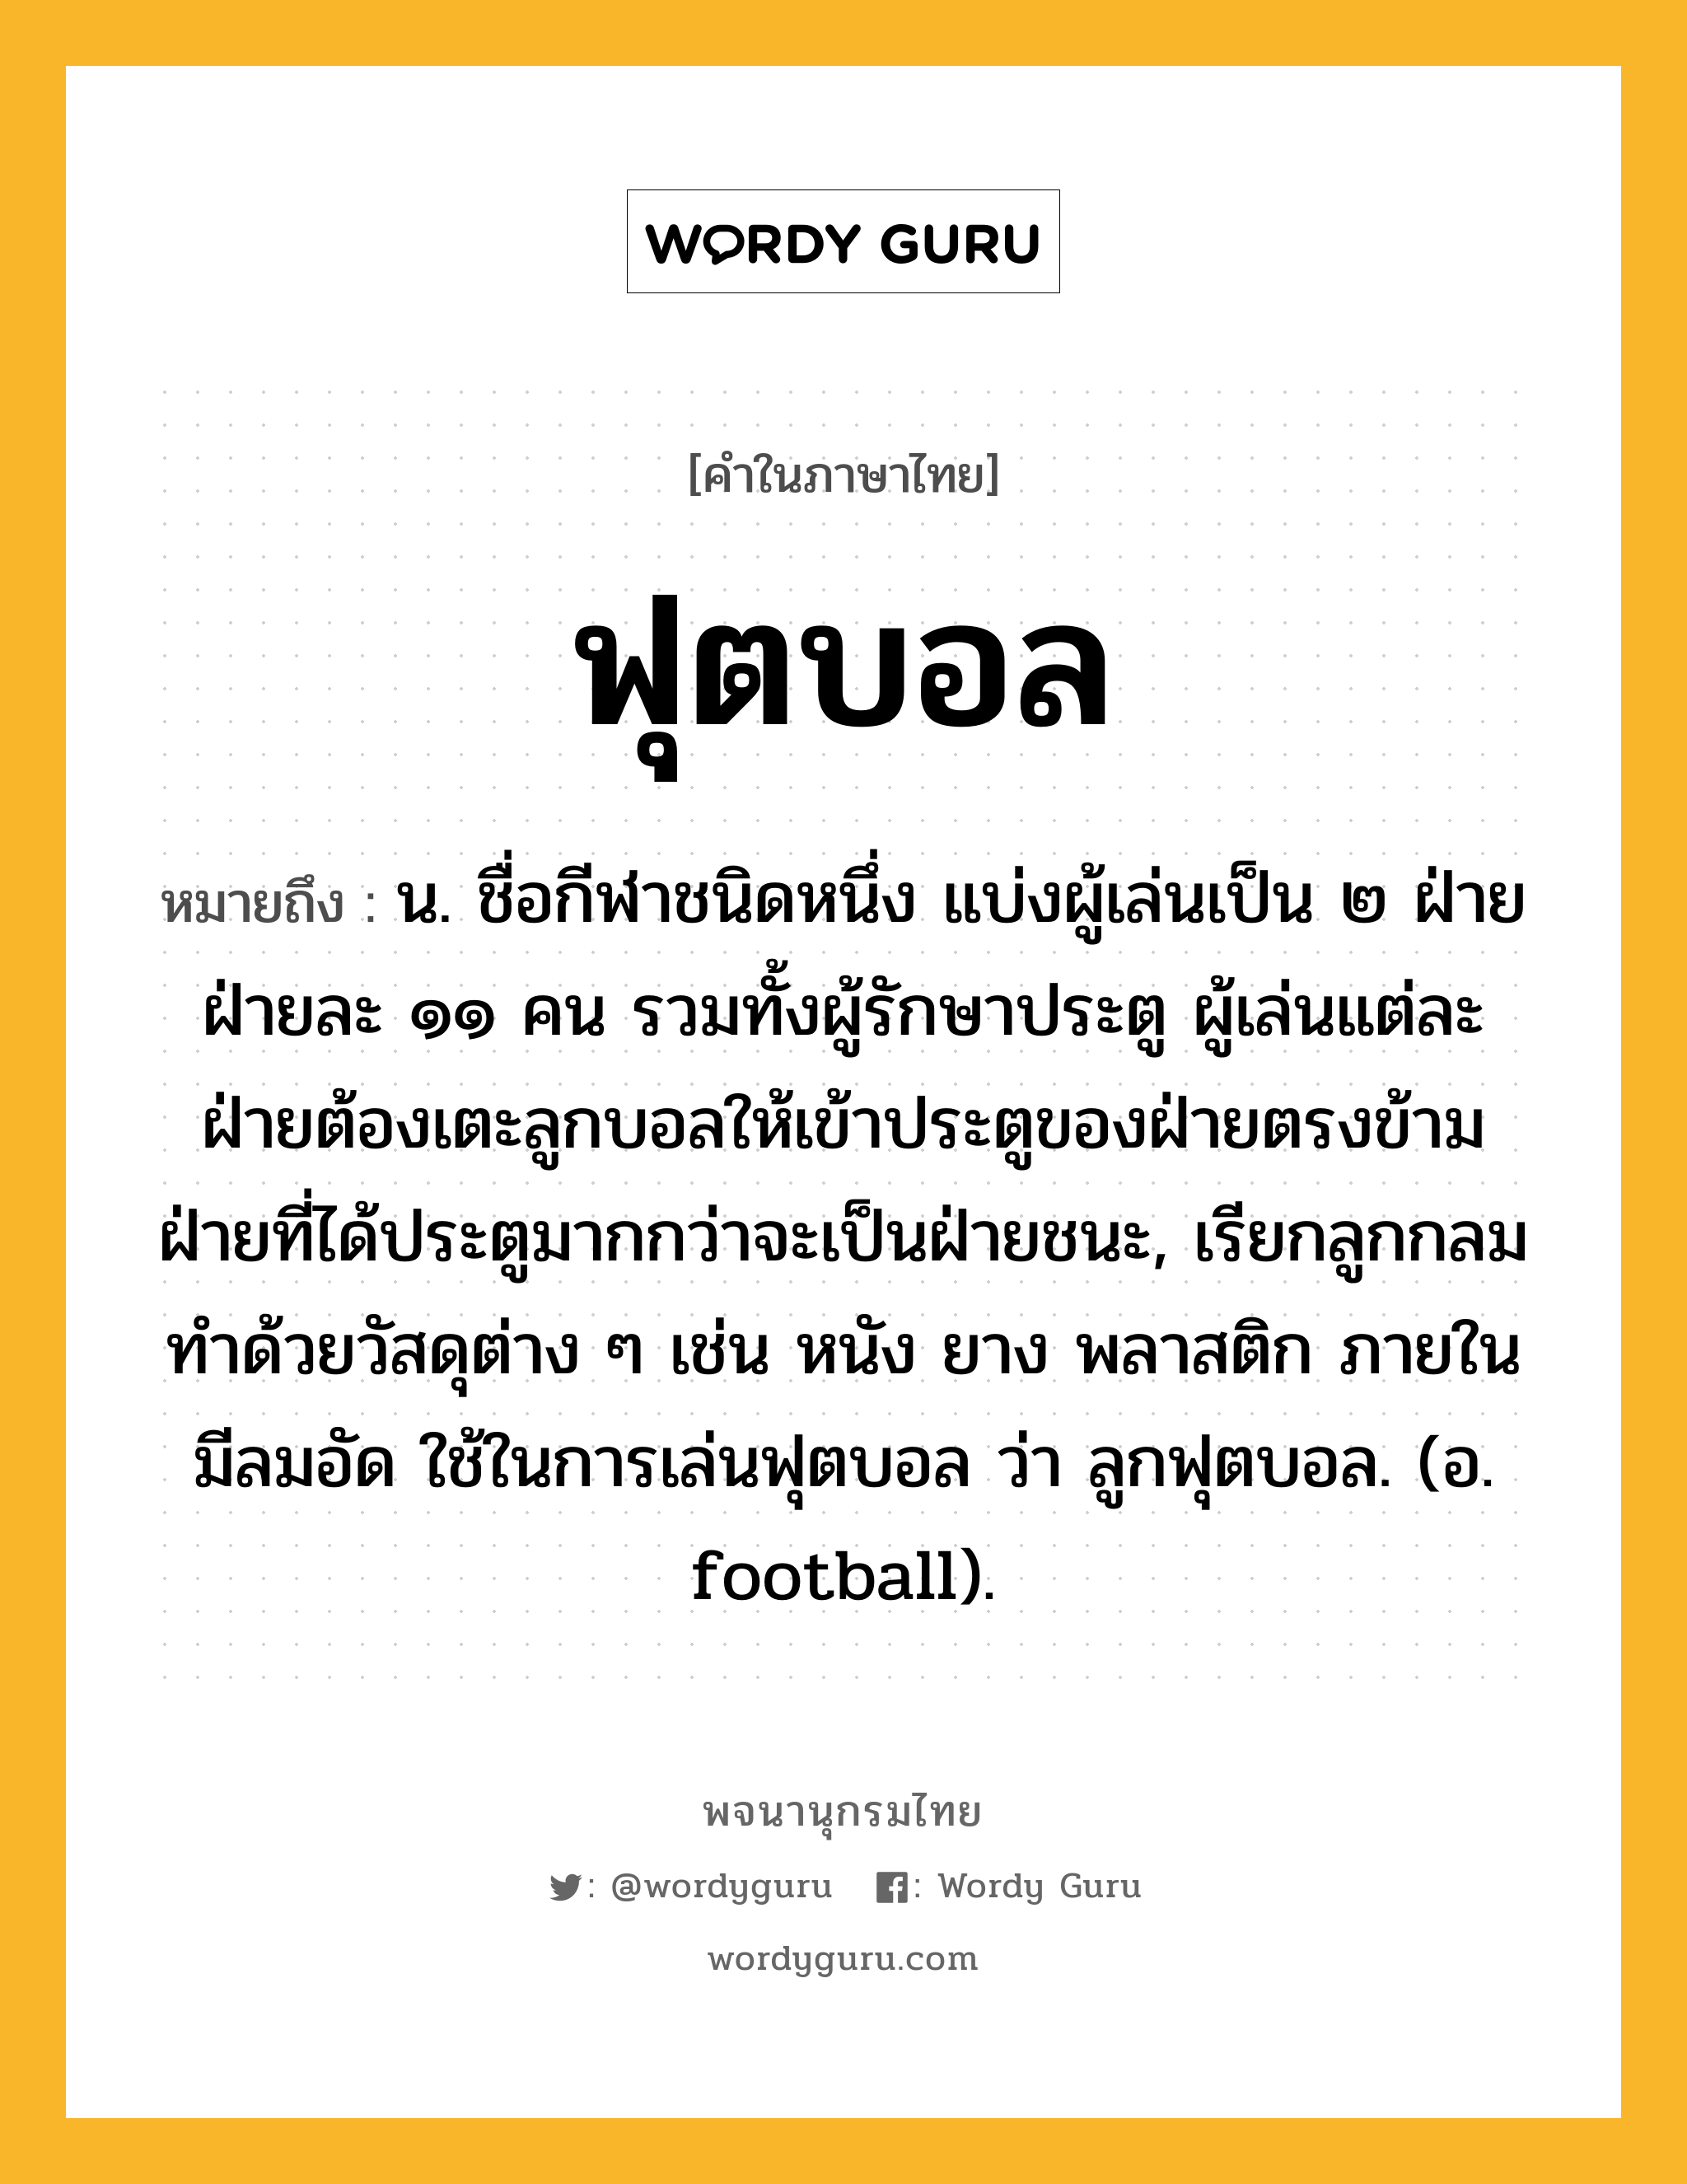 ฟุตบอล ความหมาย หมายถึงอะไร?, คำในภาษาไทย ฟุตบอล หมายถึง น. ชื่อกีฬาชนิดหนึ่ง แบ่งผู้เล่นเป็น ๒ ฝ่าย ฝ่ายละ ๑๑ คน รวมทั้งผู้รักษาประตู ผู้เล่นแต่ละฝ่ายต้องเตะลูกบอลให้เข้าประตูของฝ่ายตรงข้าม ฝ่ายที่ได้ประตูมากกว่าจะเป็นฝ่ายชนะ, เรียกลูกกลมทำด้วยวัสดุต่าง ๆ เช่น หนัง ยาง พลาสติก ภายในมีลมอัด ใช้ในการเล่นฟุตบอล ว่า ลูกฟุตบอล. (อ. football).